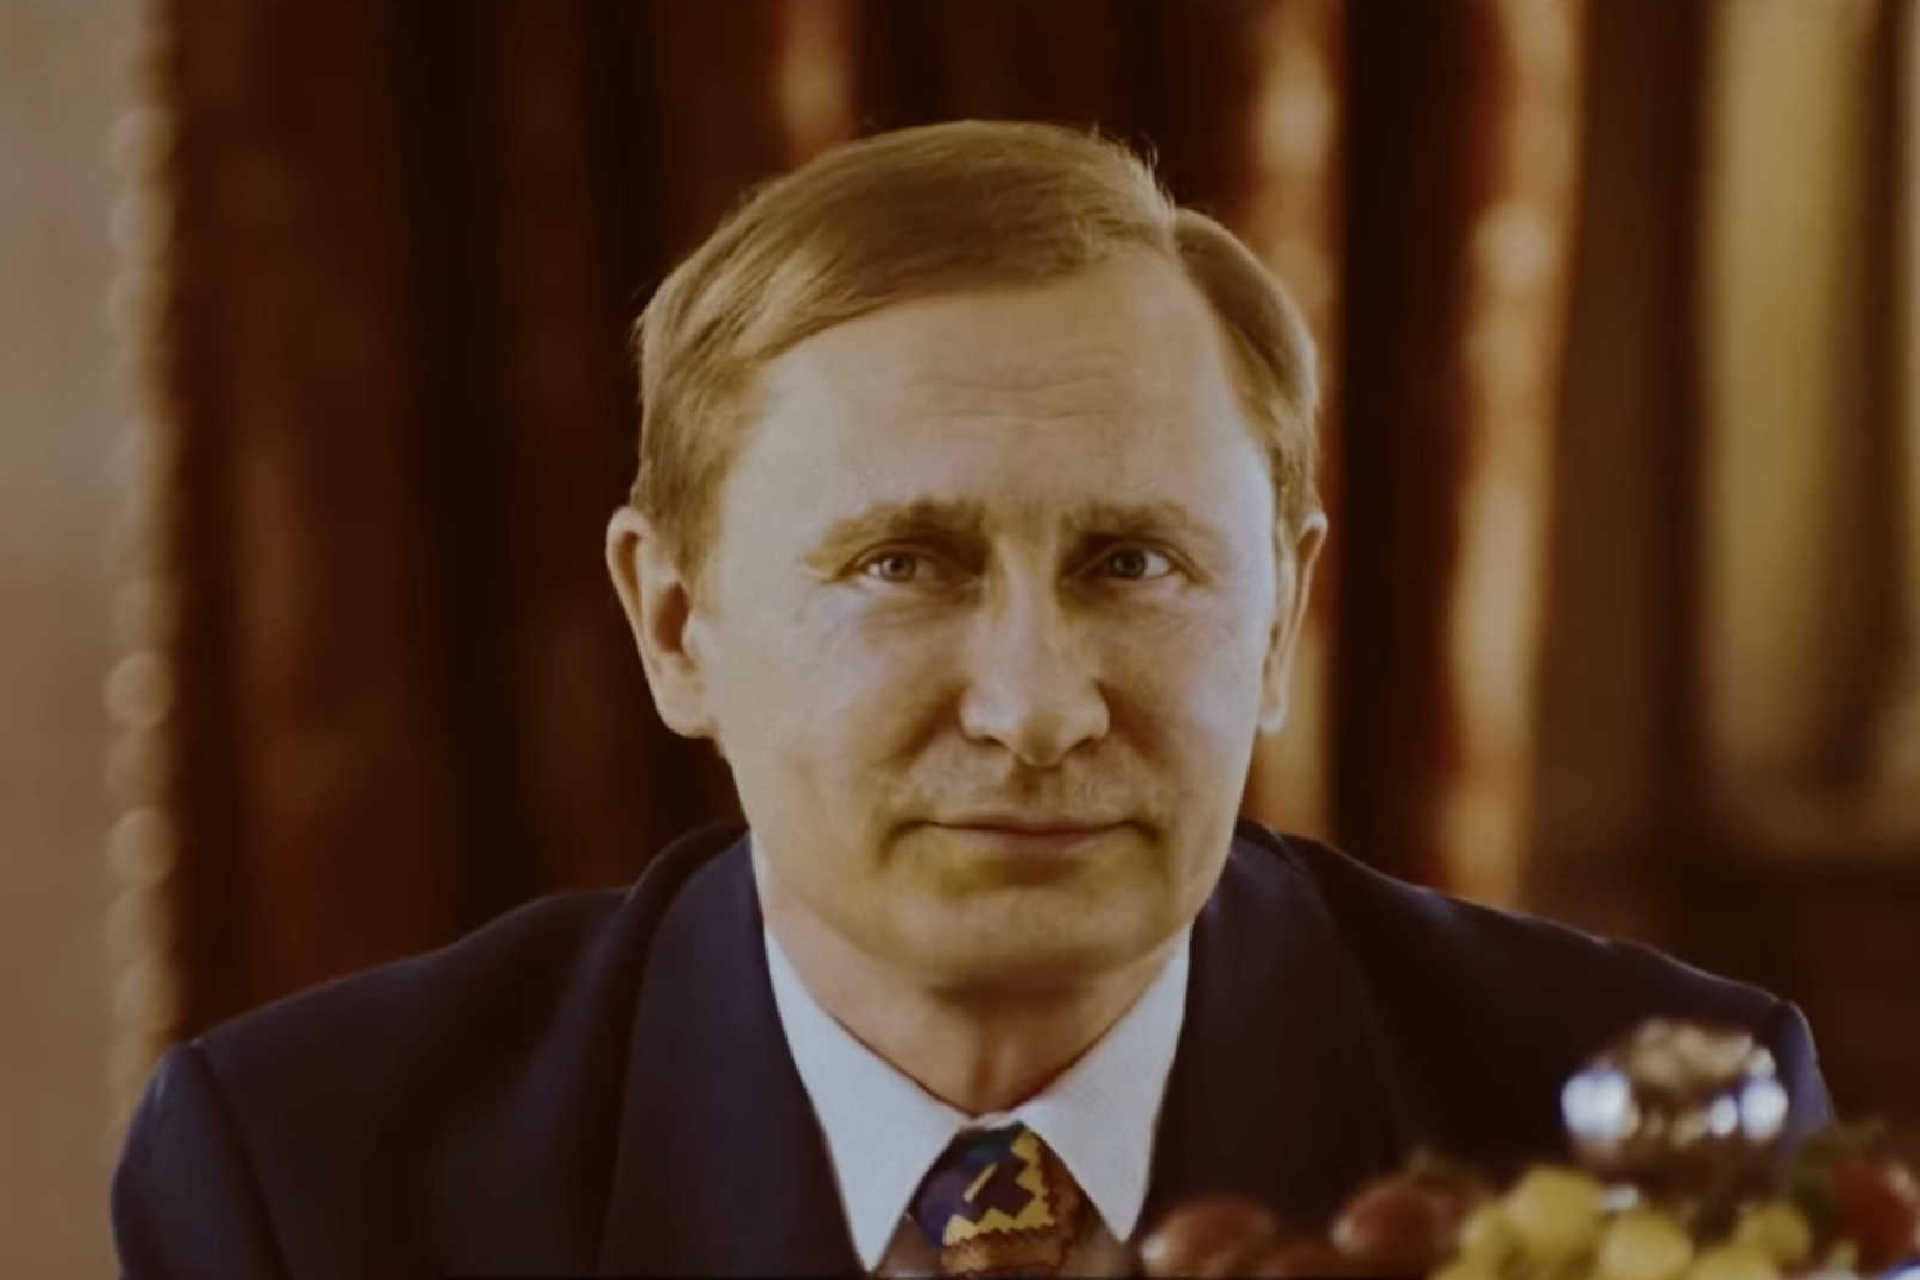 La sorprendente película de Putin protagonizada por un Putin digital